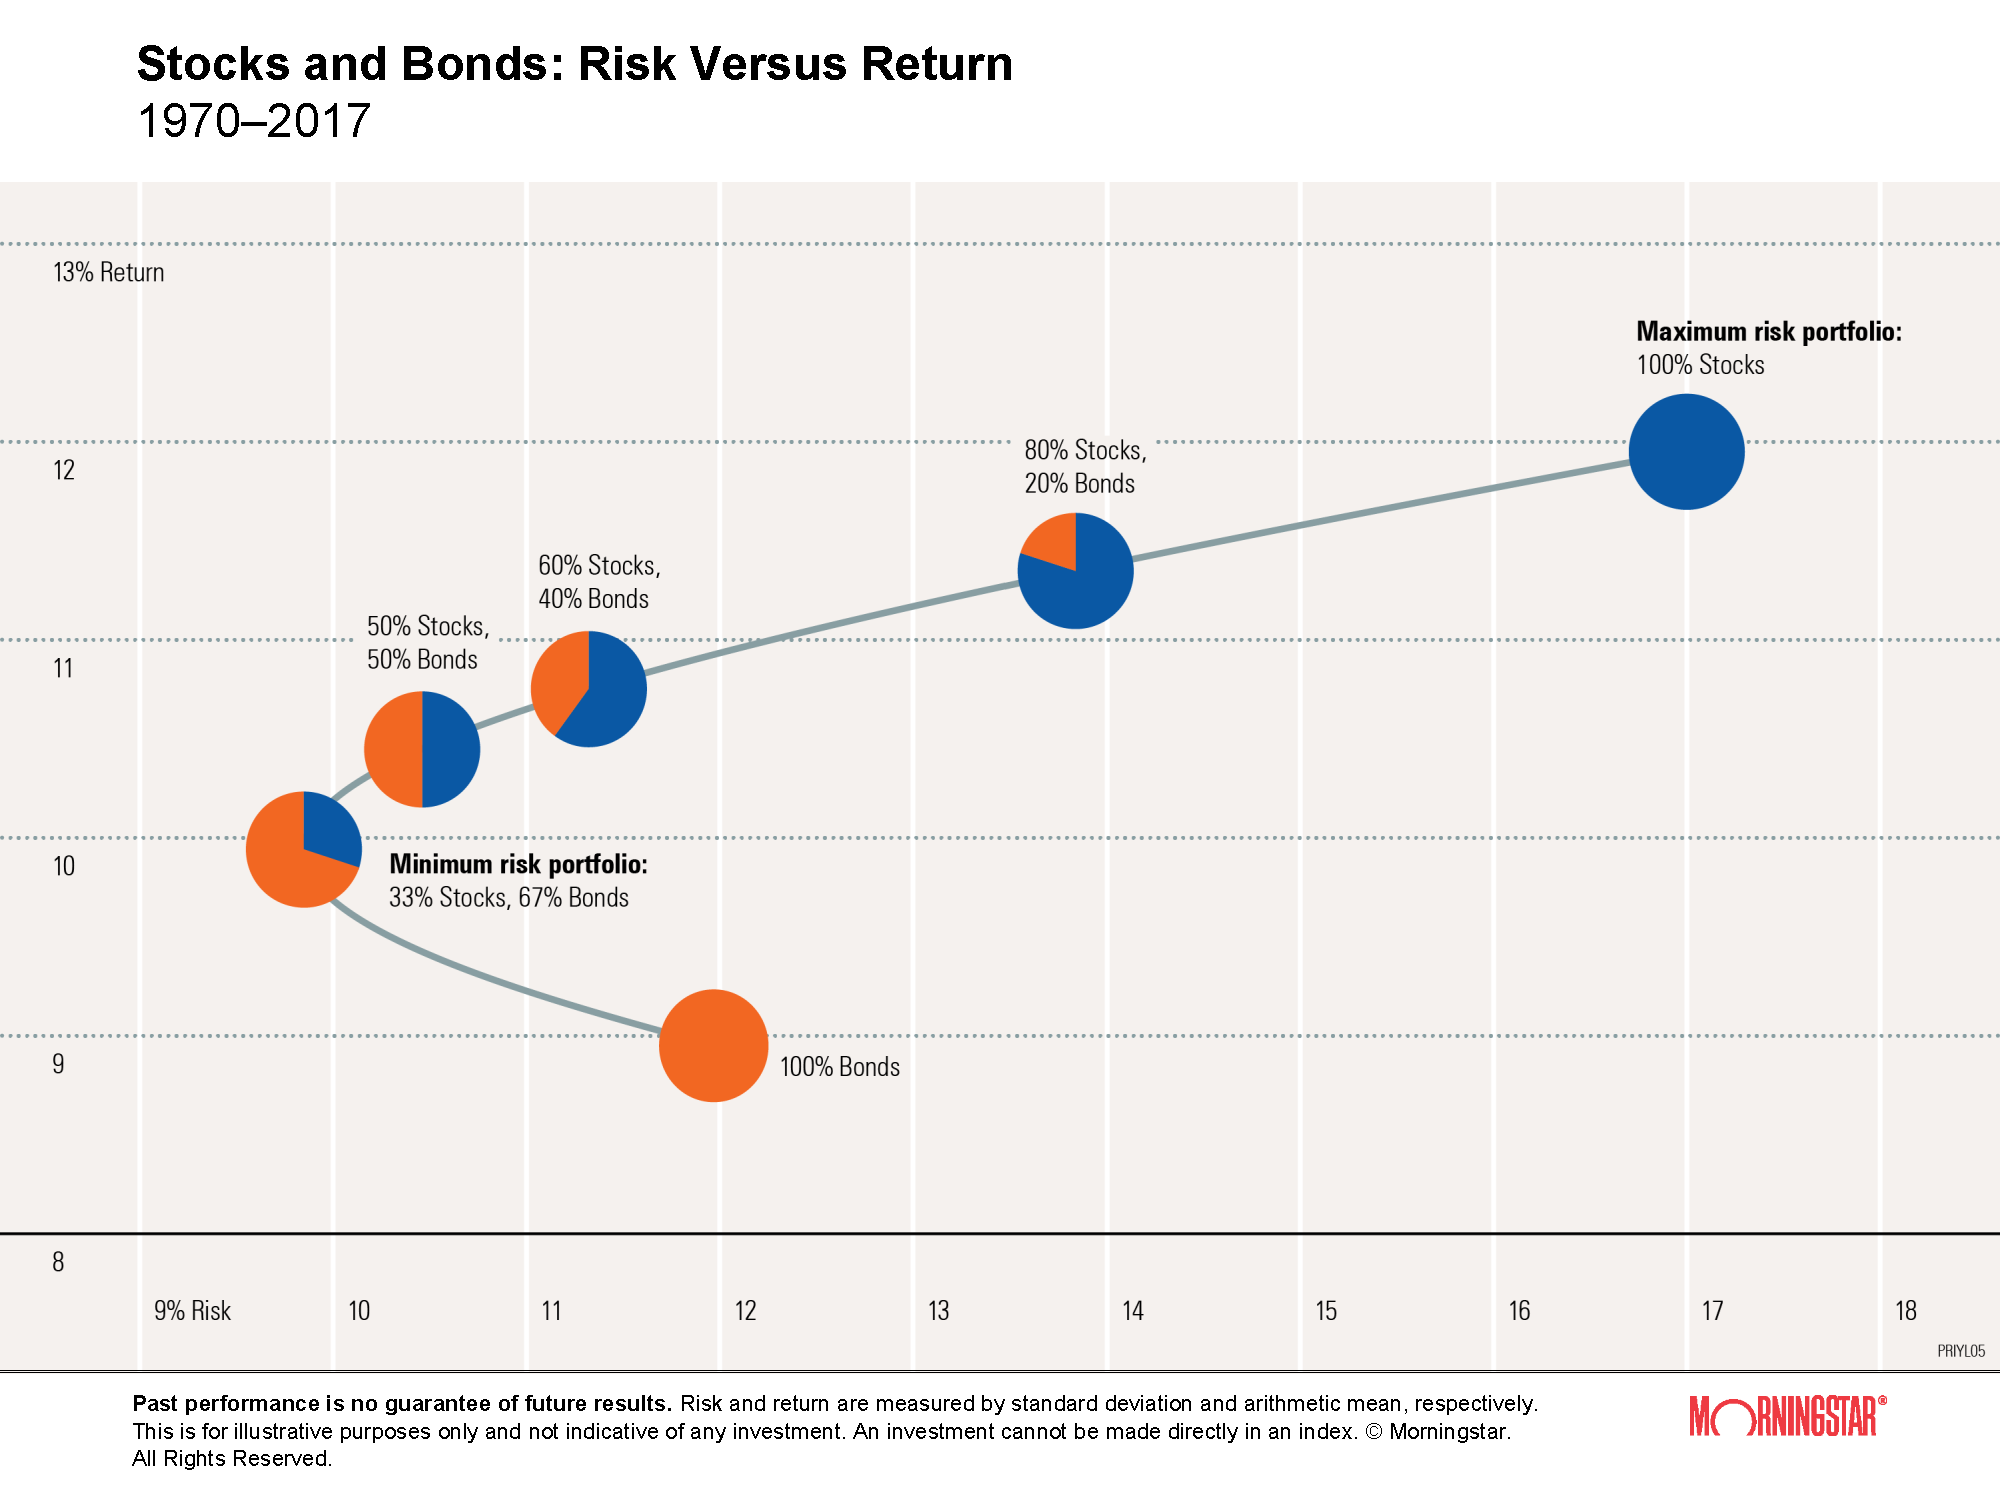 График соотношения акций с облигациями и возврата с инвестиций. Портфель, на 100% состоящий из акций, несет максимальный риск просадки 17%, но он самый доходный. В то же время портфель, на 100% состоящий из облигаций, не самый безрисковый вариант. Оптимальный портфель с точки зрения минимизации риска — 33% акций и 67% облигаций